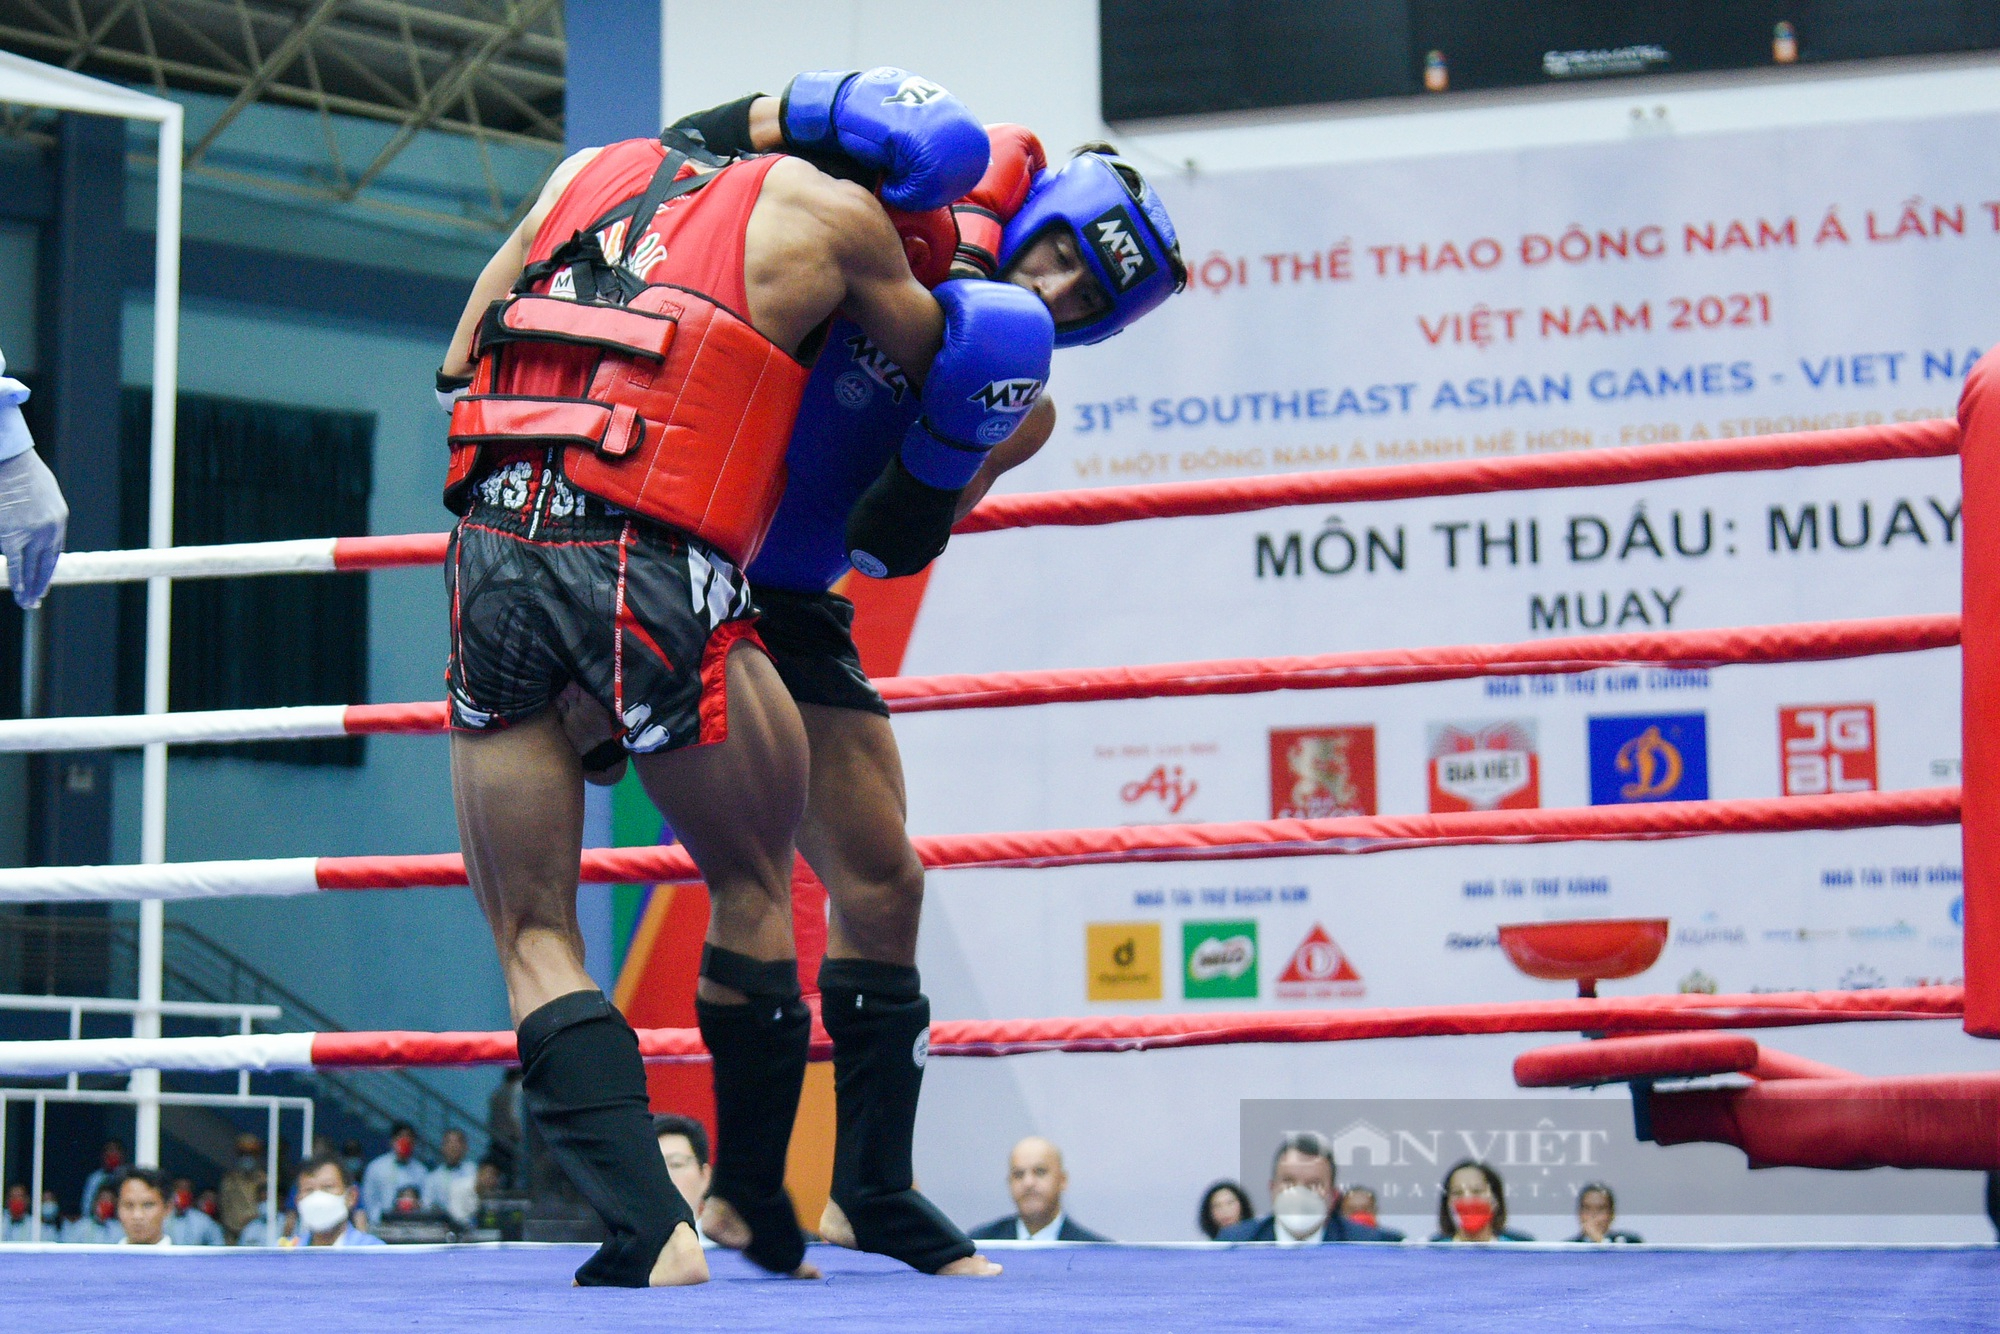 Đánh bại đối thủ Philippines, võ sĩ Nguyễn Trần Duy Nhất vào chung kết Muay - Ảnh 6.